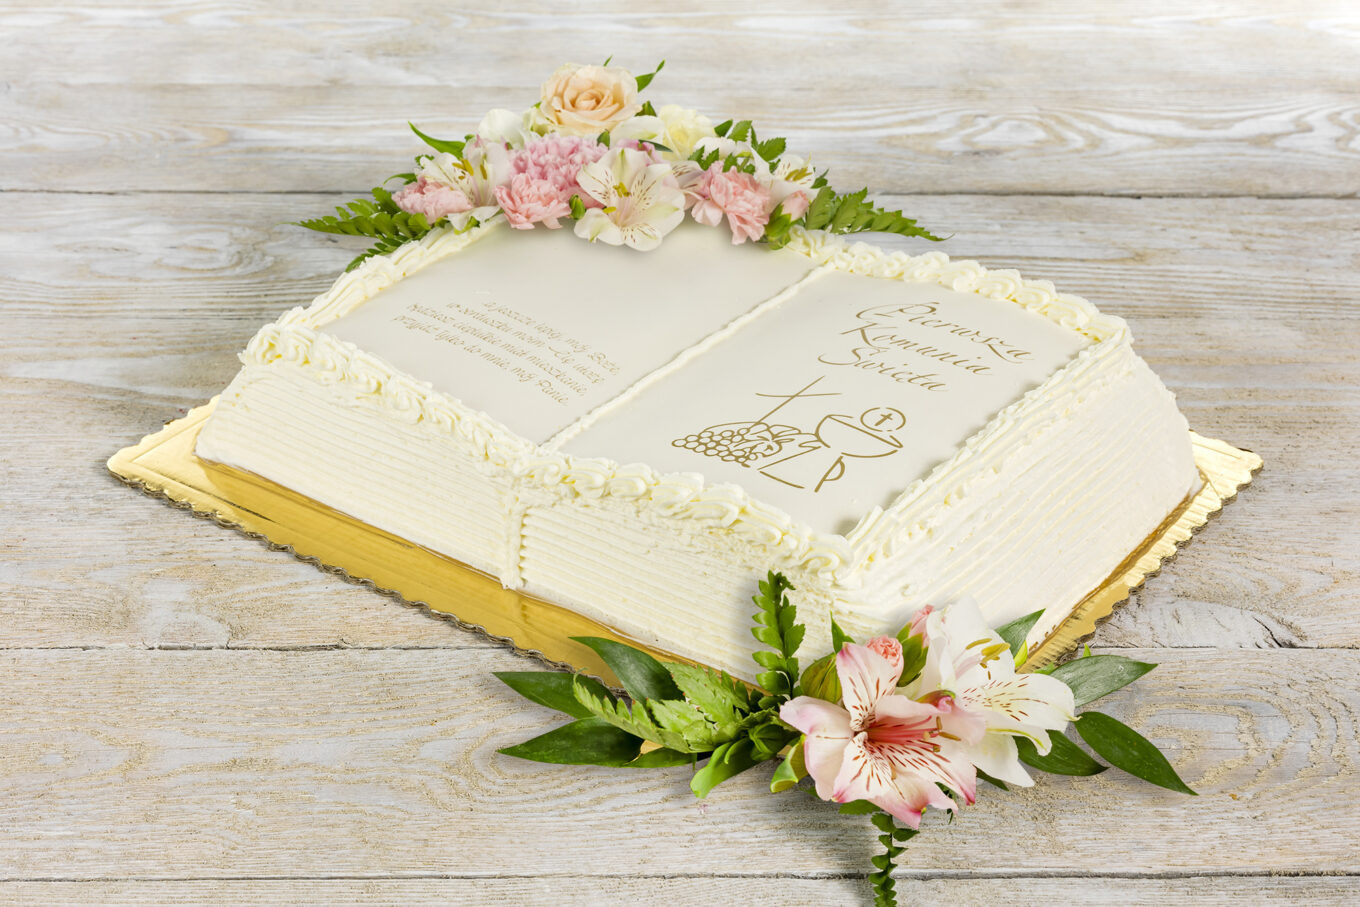 tort książka z kwiatami na komunię Cukiernia Jacek Placek to synonim smaku domowych ciast z naturalnych produktów.